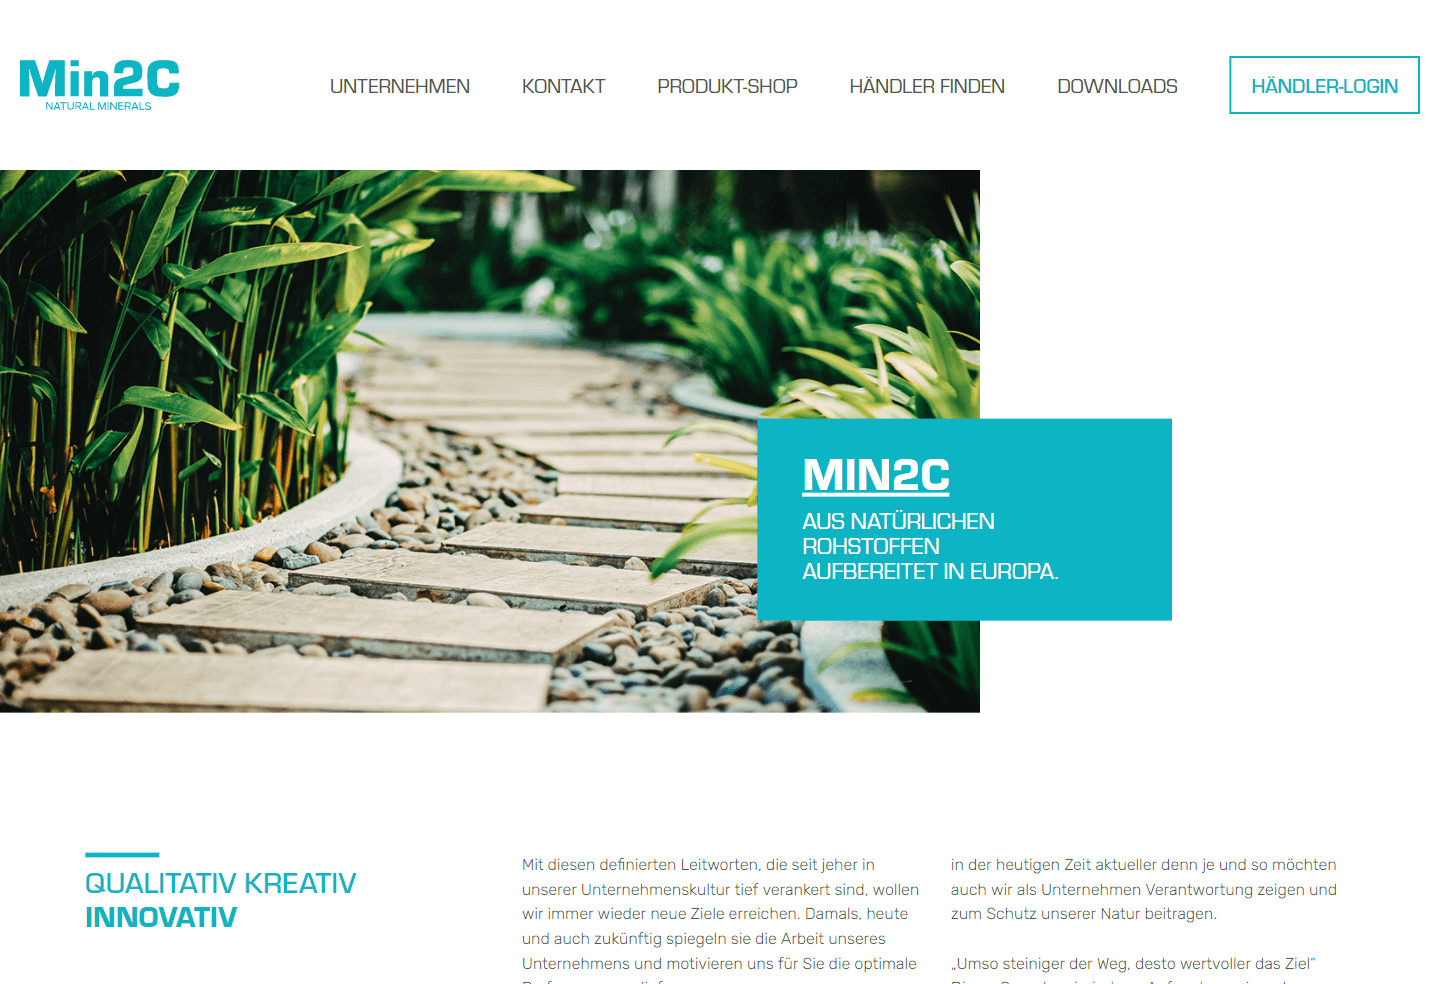 Min2C GmbH